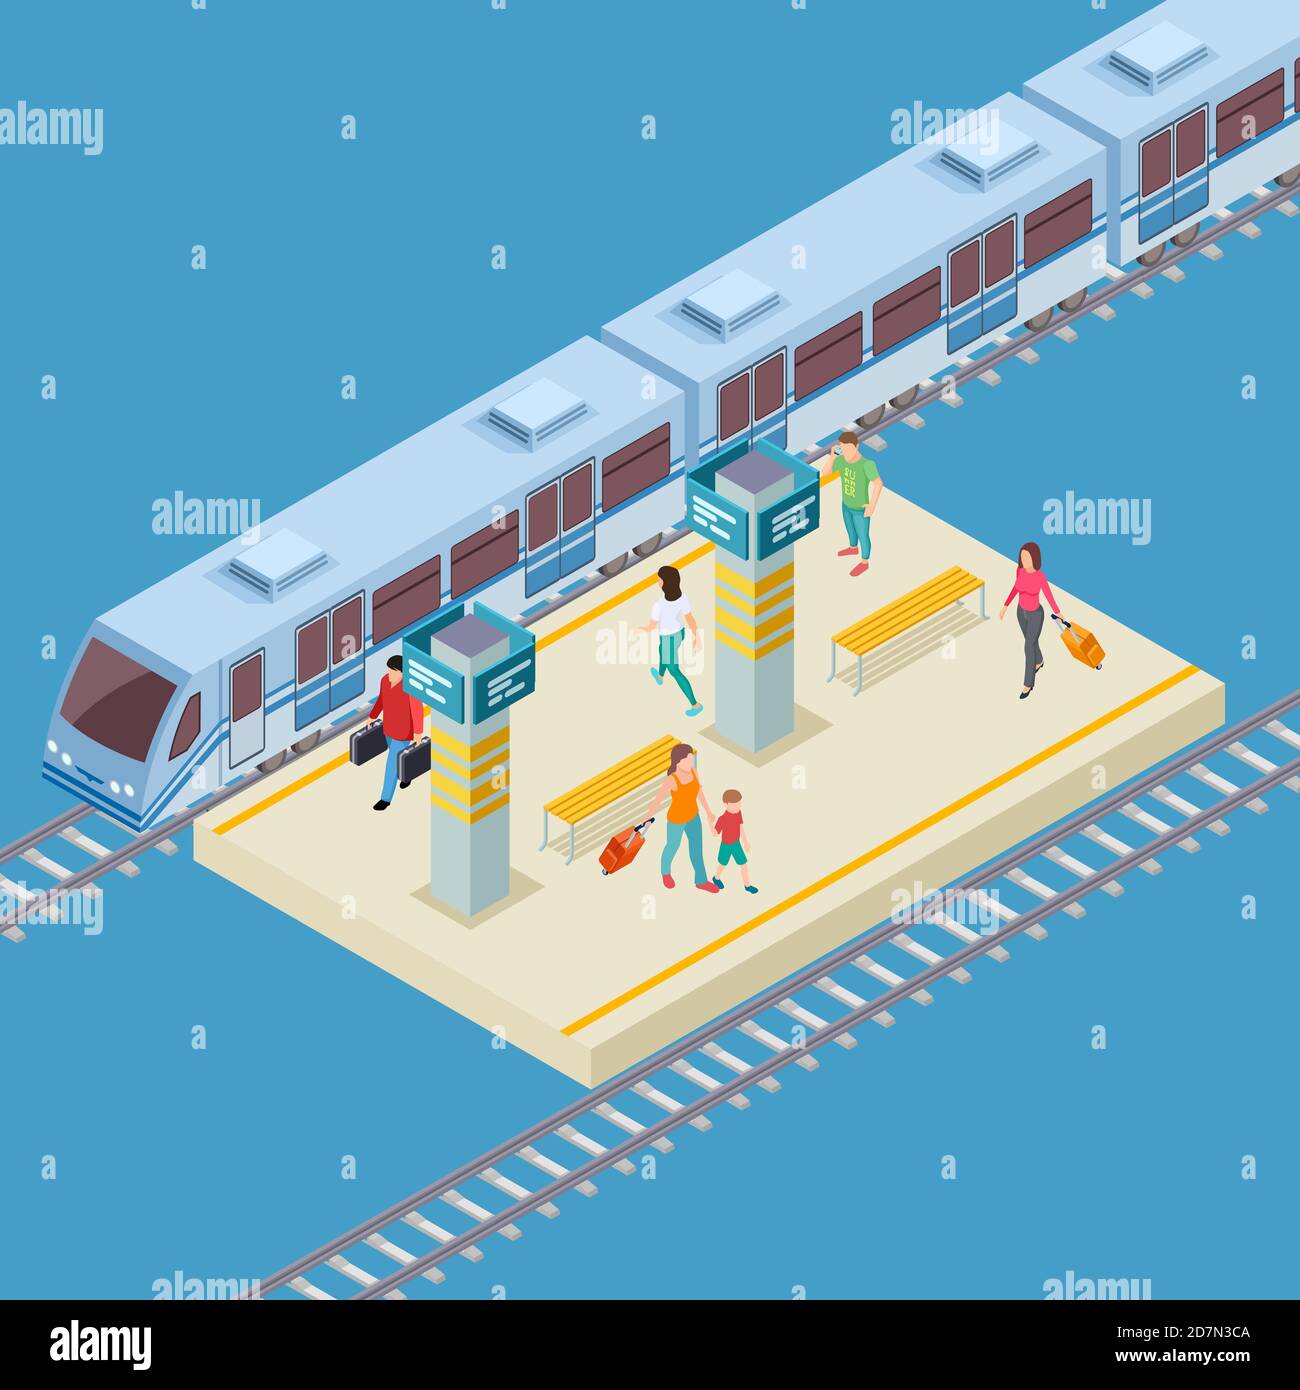 Posizione vettoriale della stazione ferroviaria della città in 3d isometrica. Illustrazione dell'infrastruttura ferroviaria, dei trasporti pubblici di passeggeri Illustrazione Vettoriale